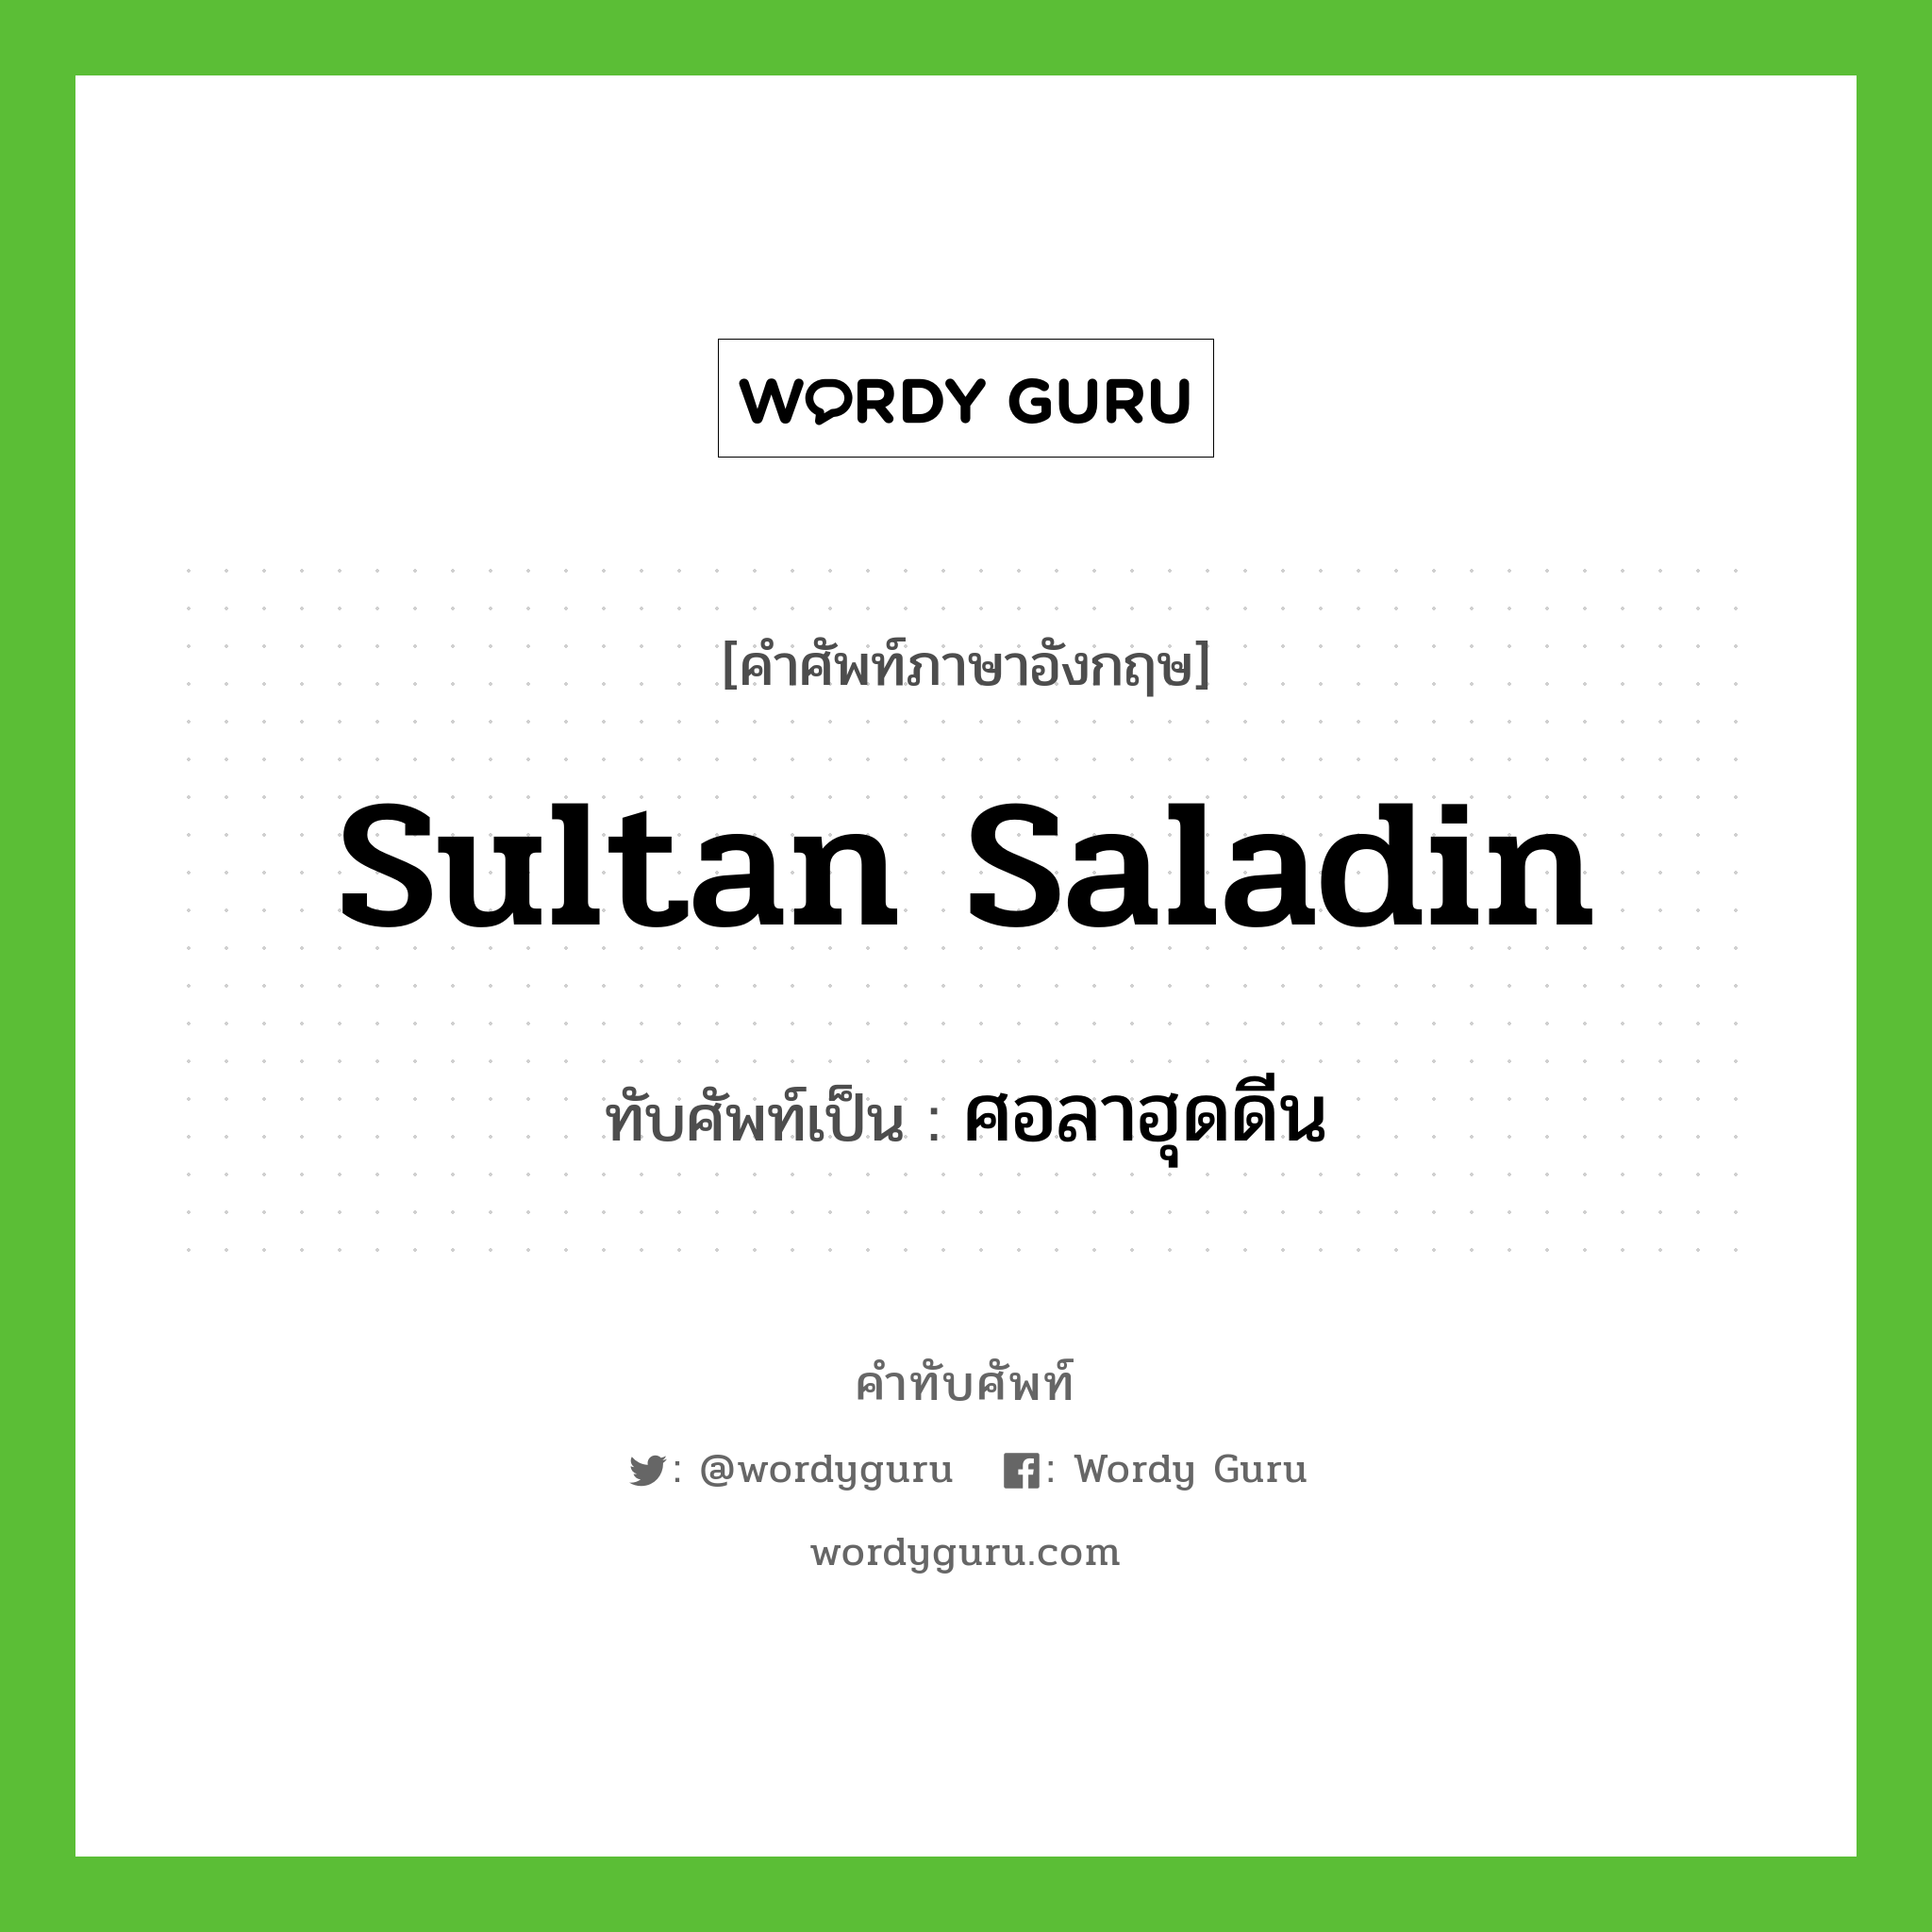 ศอลาฮุดดีน เขียนอย่างไร?, คำศัพท์ภาษาอังกฤษ ศอลาฮุดดีน ทับศัพท์เป็น Sultan Saladin